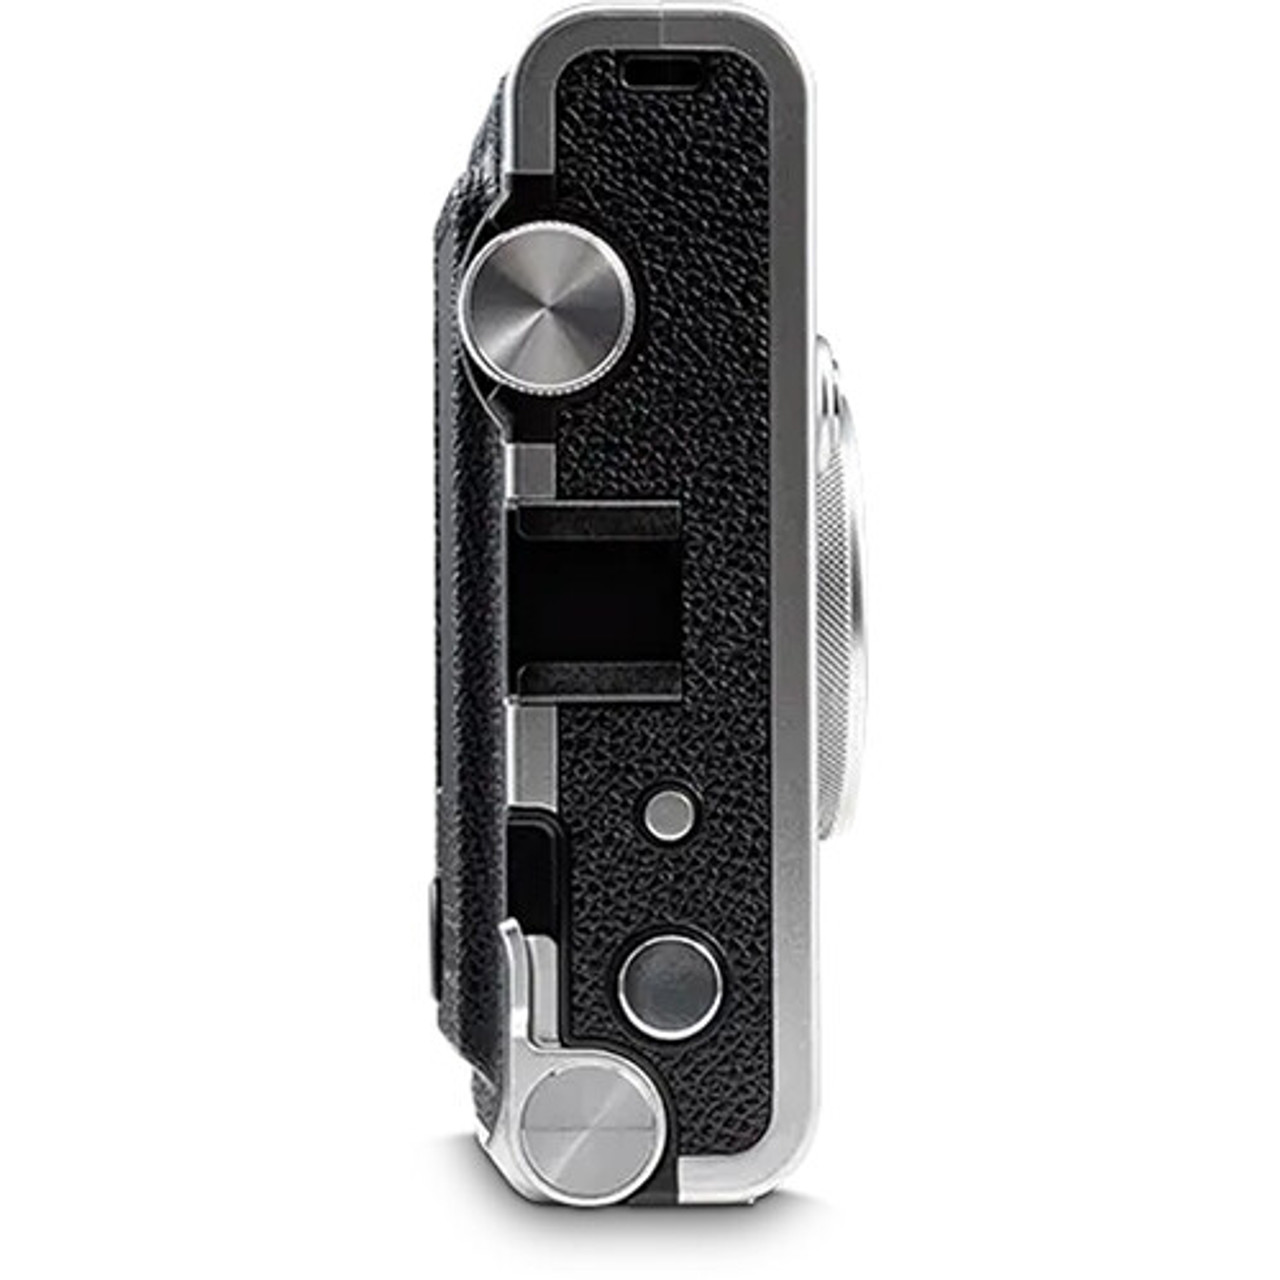 Fujifilm anuncia la cámara Instax Mini Evo, un híbrido de carrete y digital  – TecnoAp21